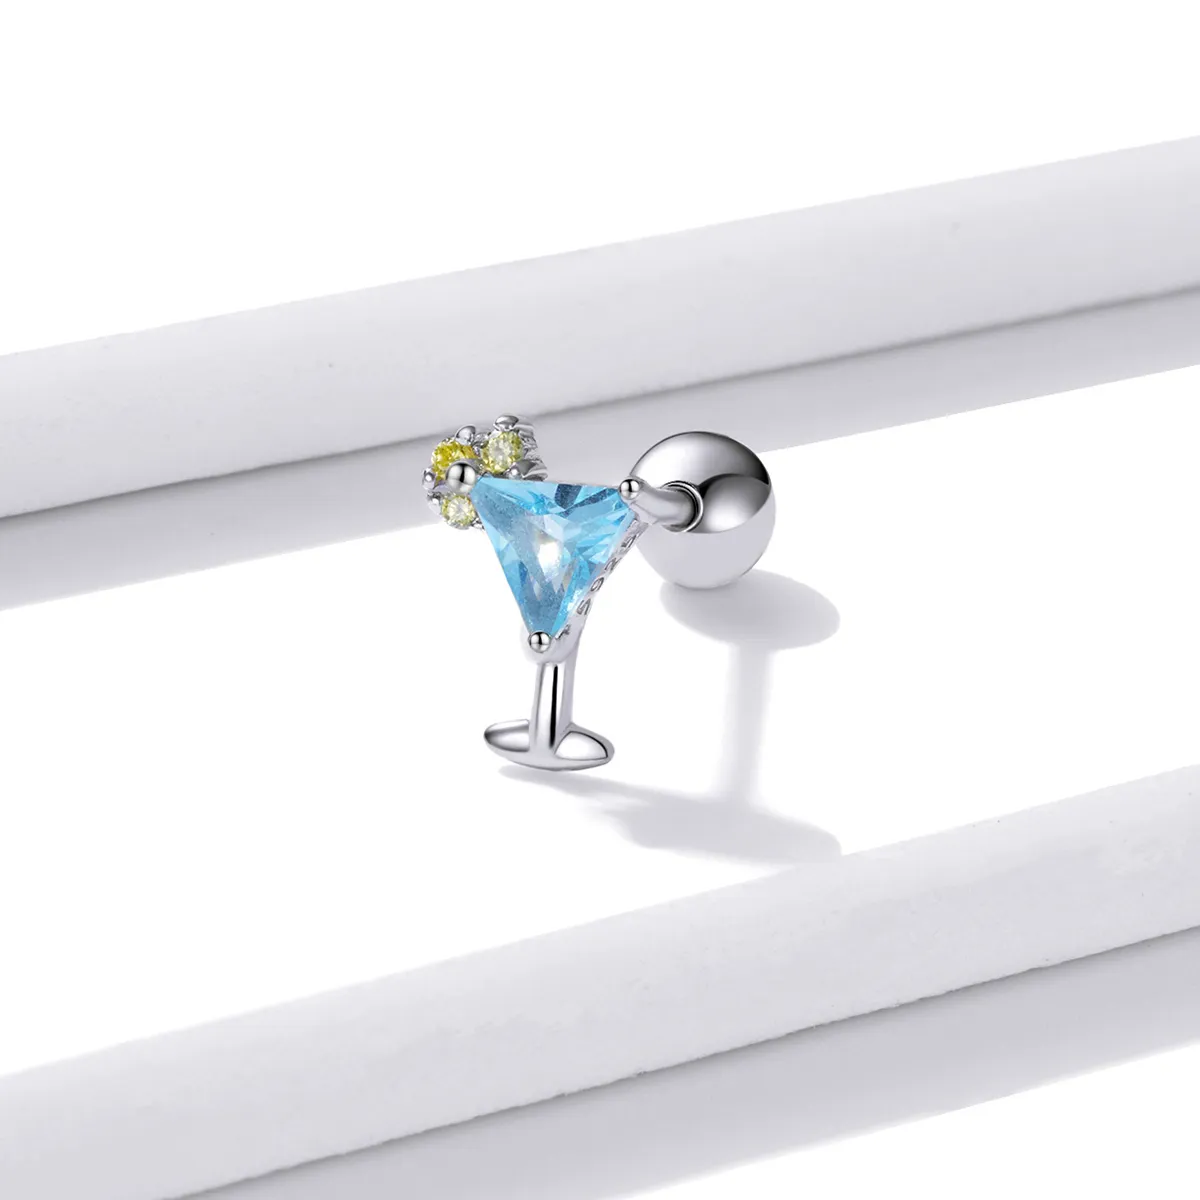 Stil Pandora de vară - Cercei drăgălași în formă de băutură răcoritoare - BSE489